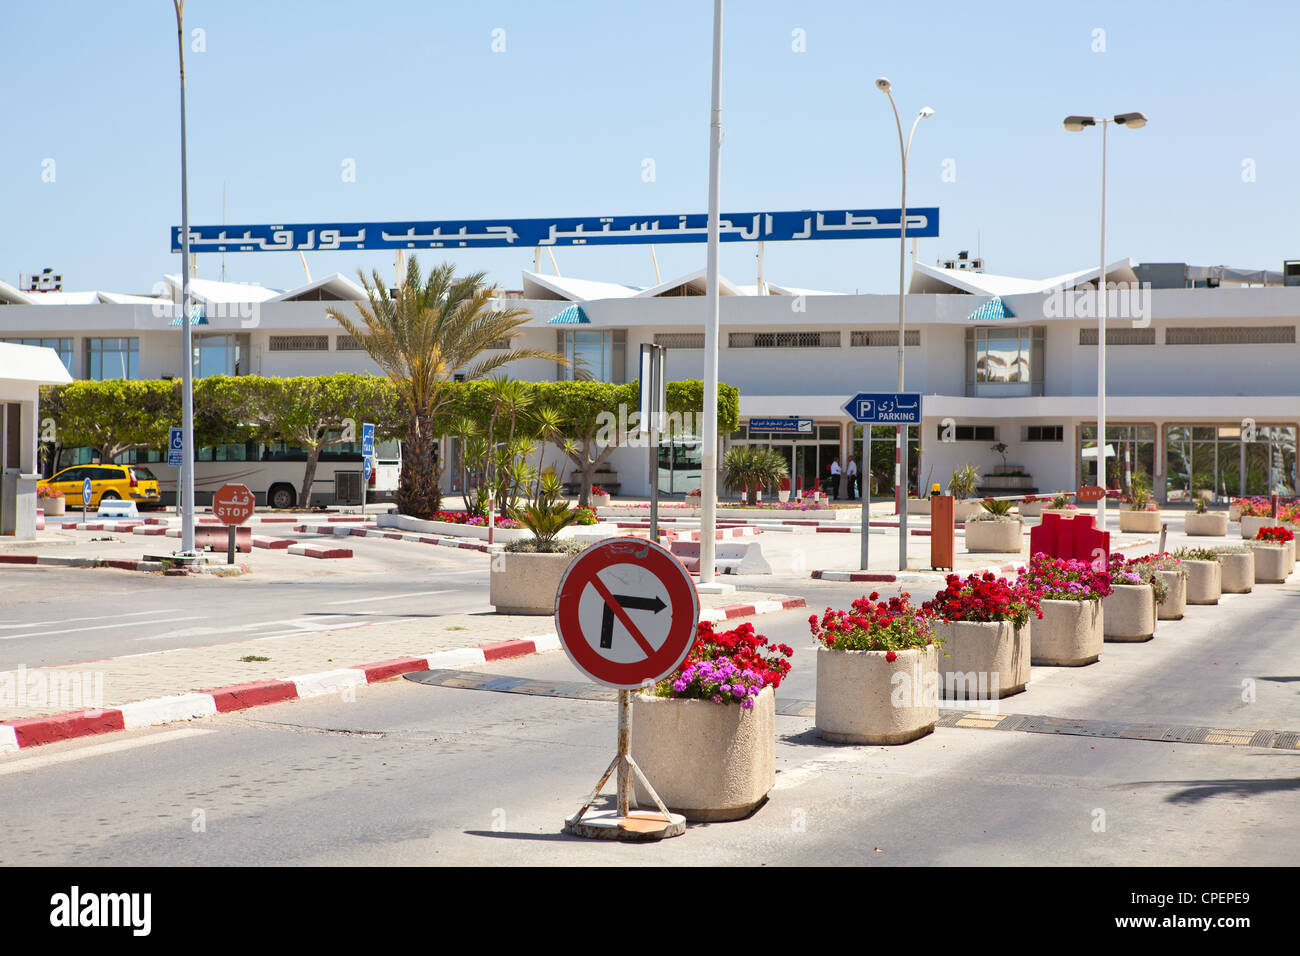 Habib Bourguiba International airport in Monastir, Tunisia. Parking zone Stock Photo